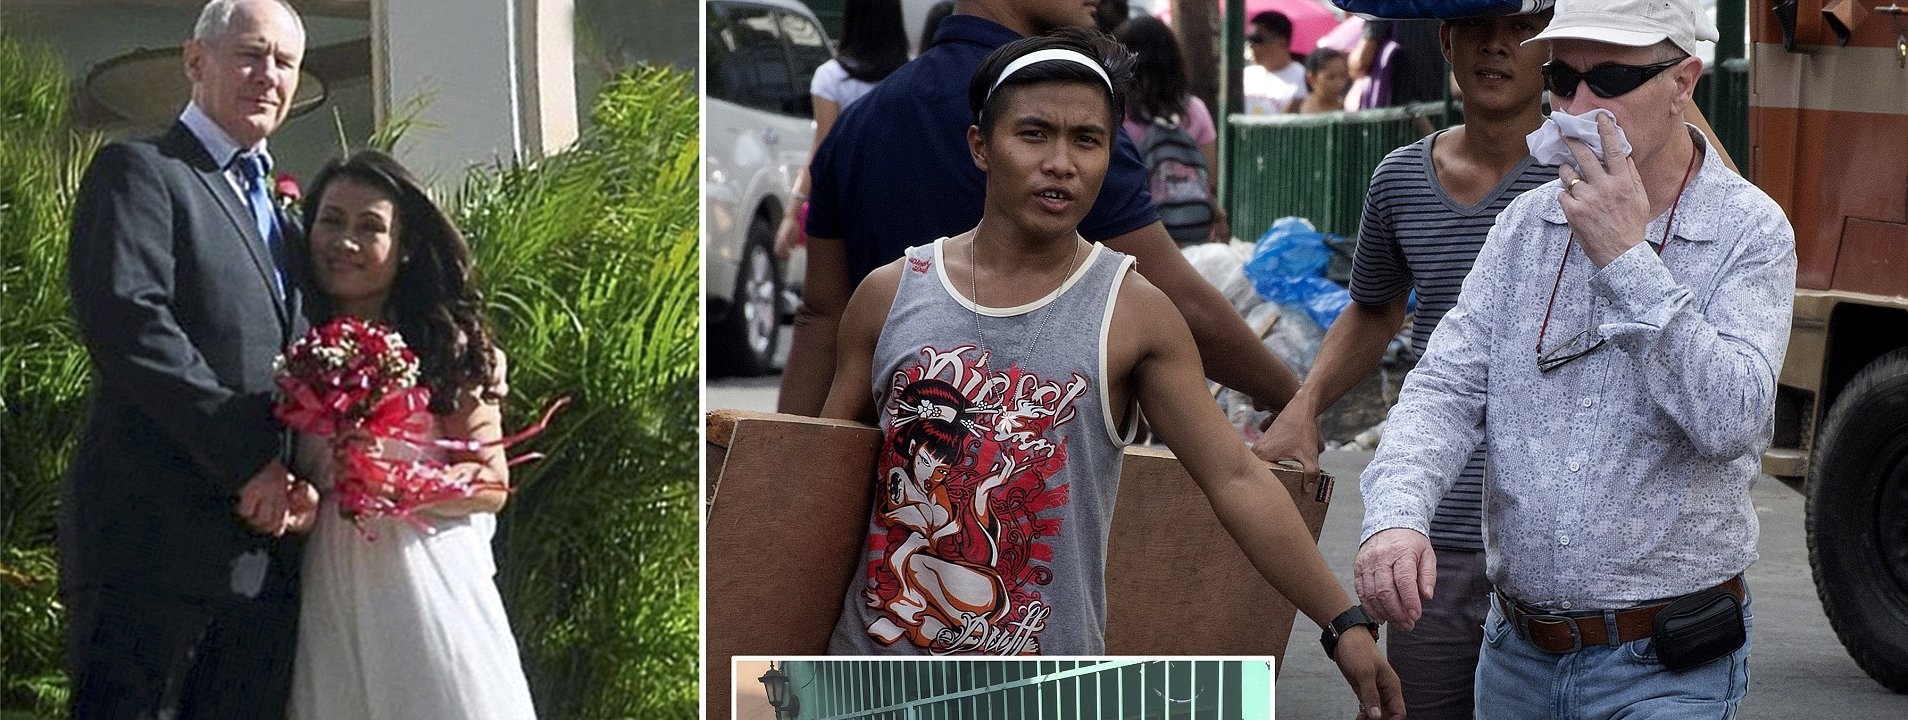 Απατεώνας προσποιήθηκε το θάνατο του – Τώρα… ζει τον έρωτα στις Φιλιππίνες με κατά 23 χρόνια μικρότερη του γυναίκα